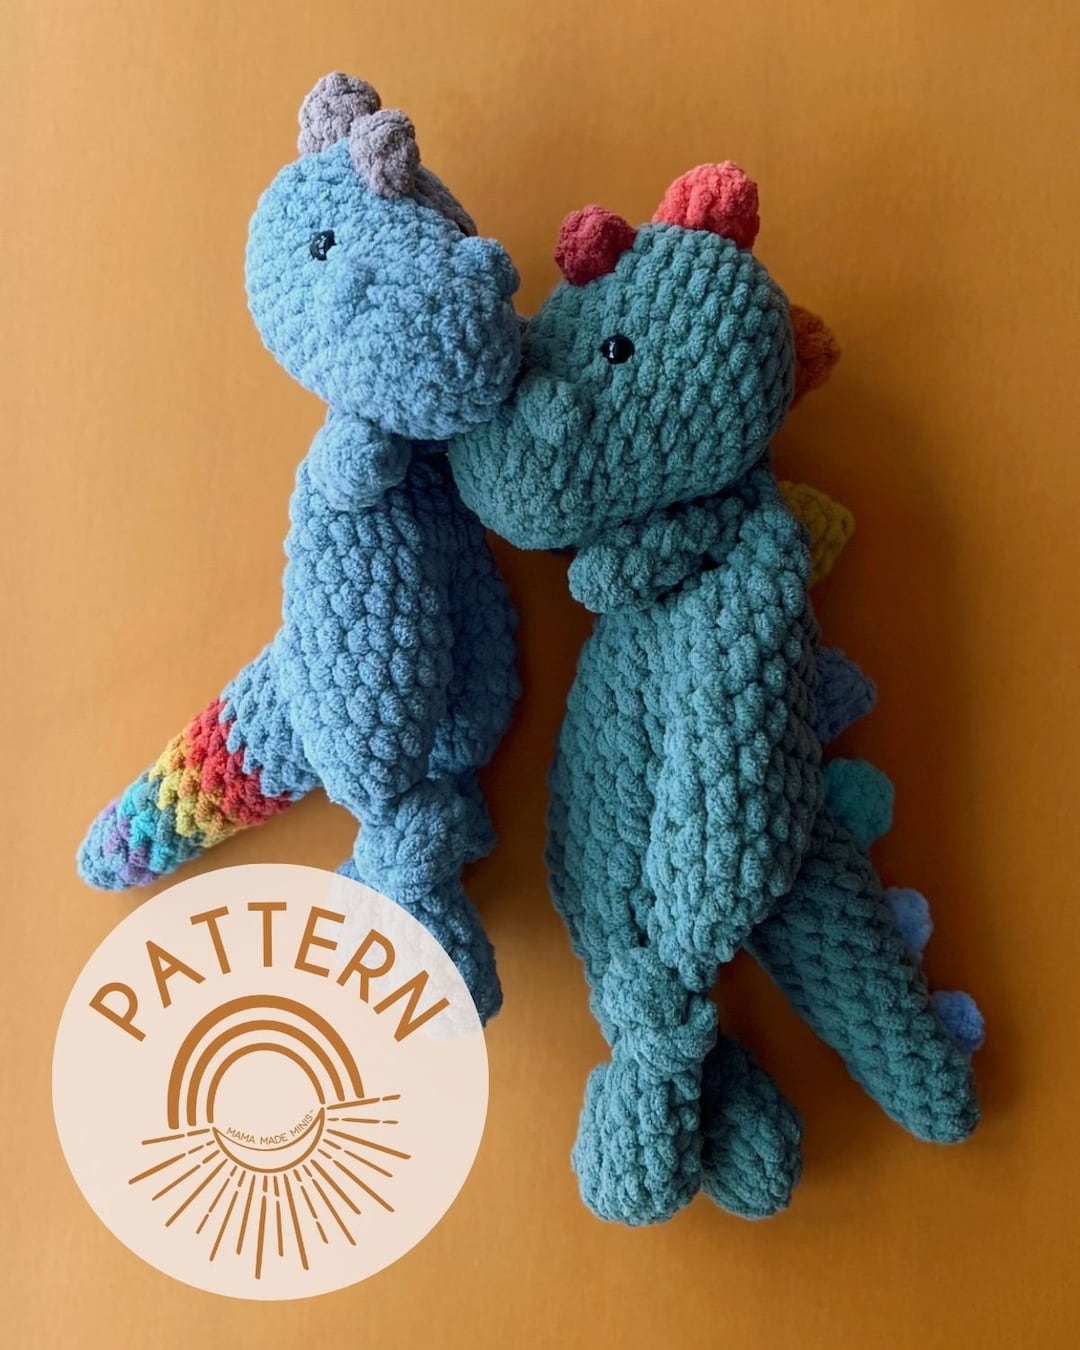 🦖 🧶 how to knot a lovey! Crochet Dino! #amigurumi #crochetting